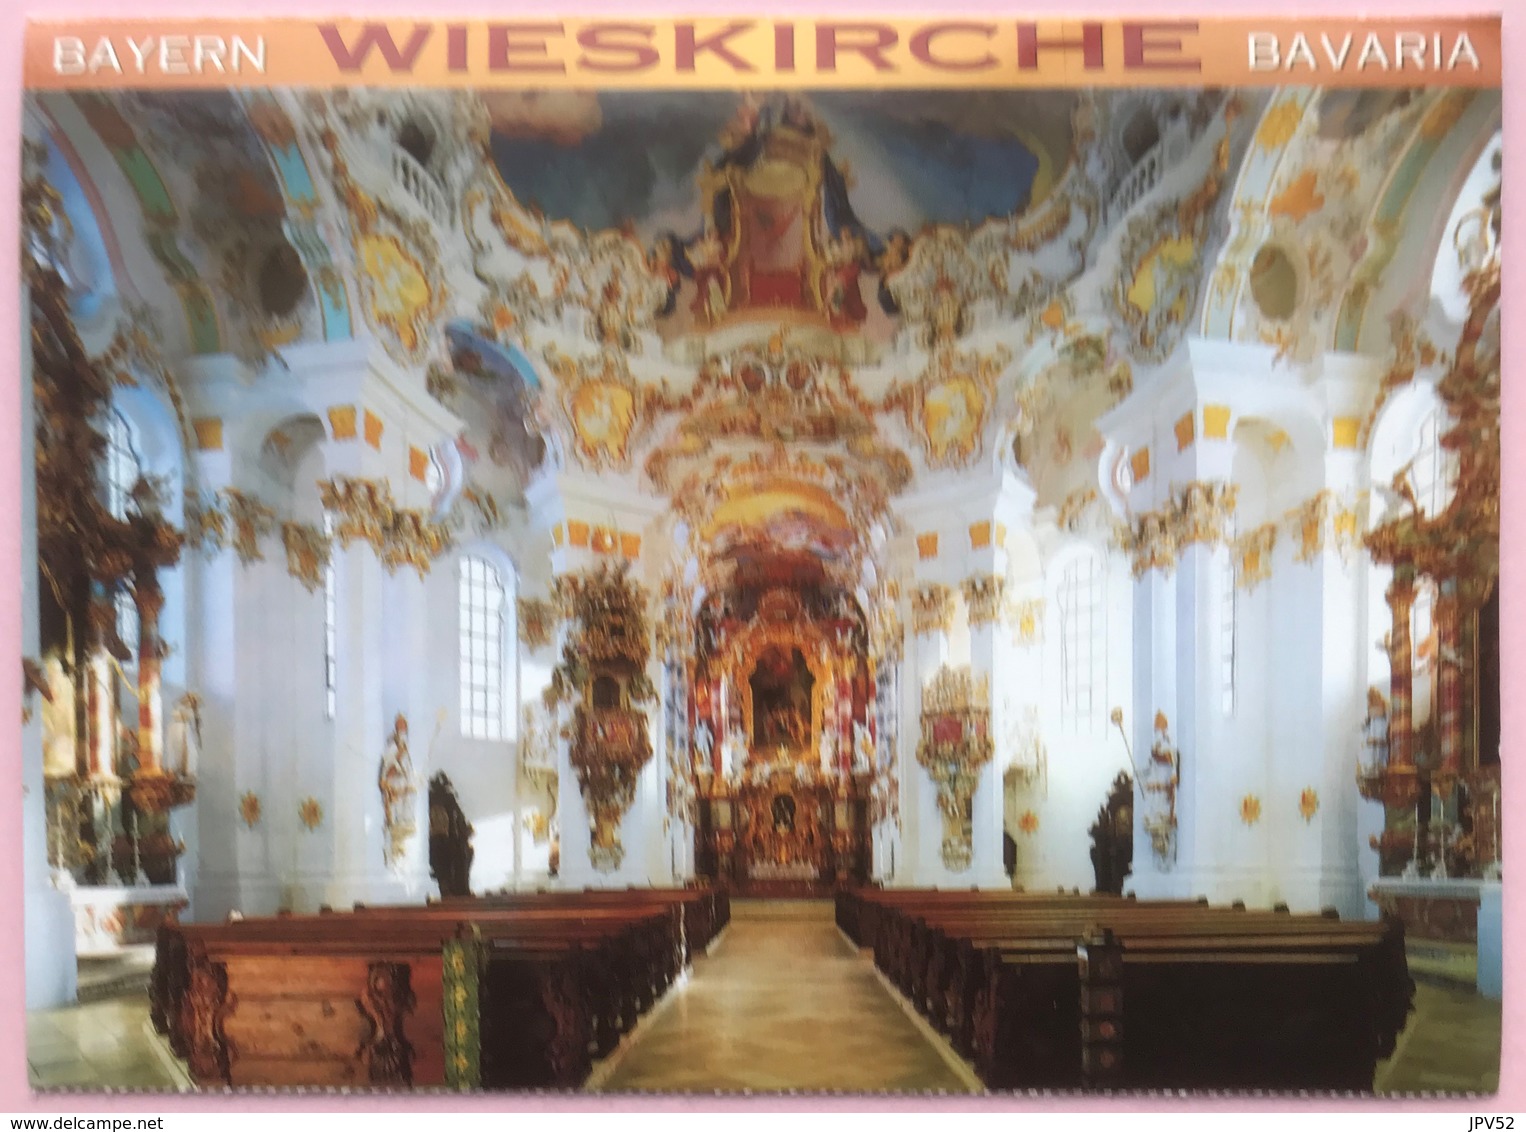 (2435) Weilheim - Steingaden - Wieskirche - Bayerischen Rokoko - Weilheim